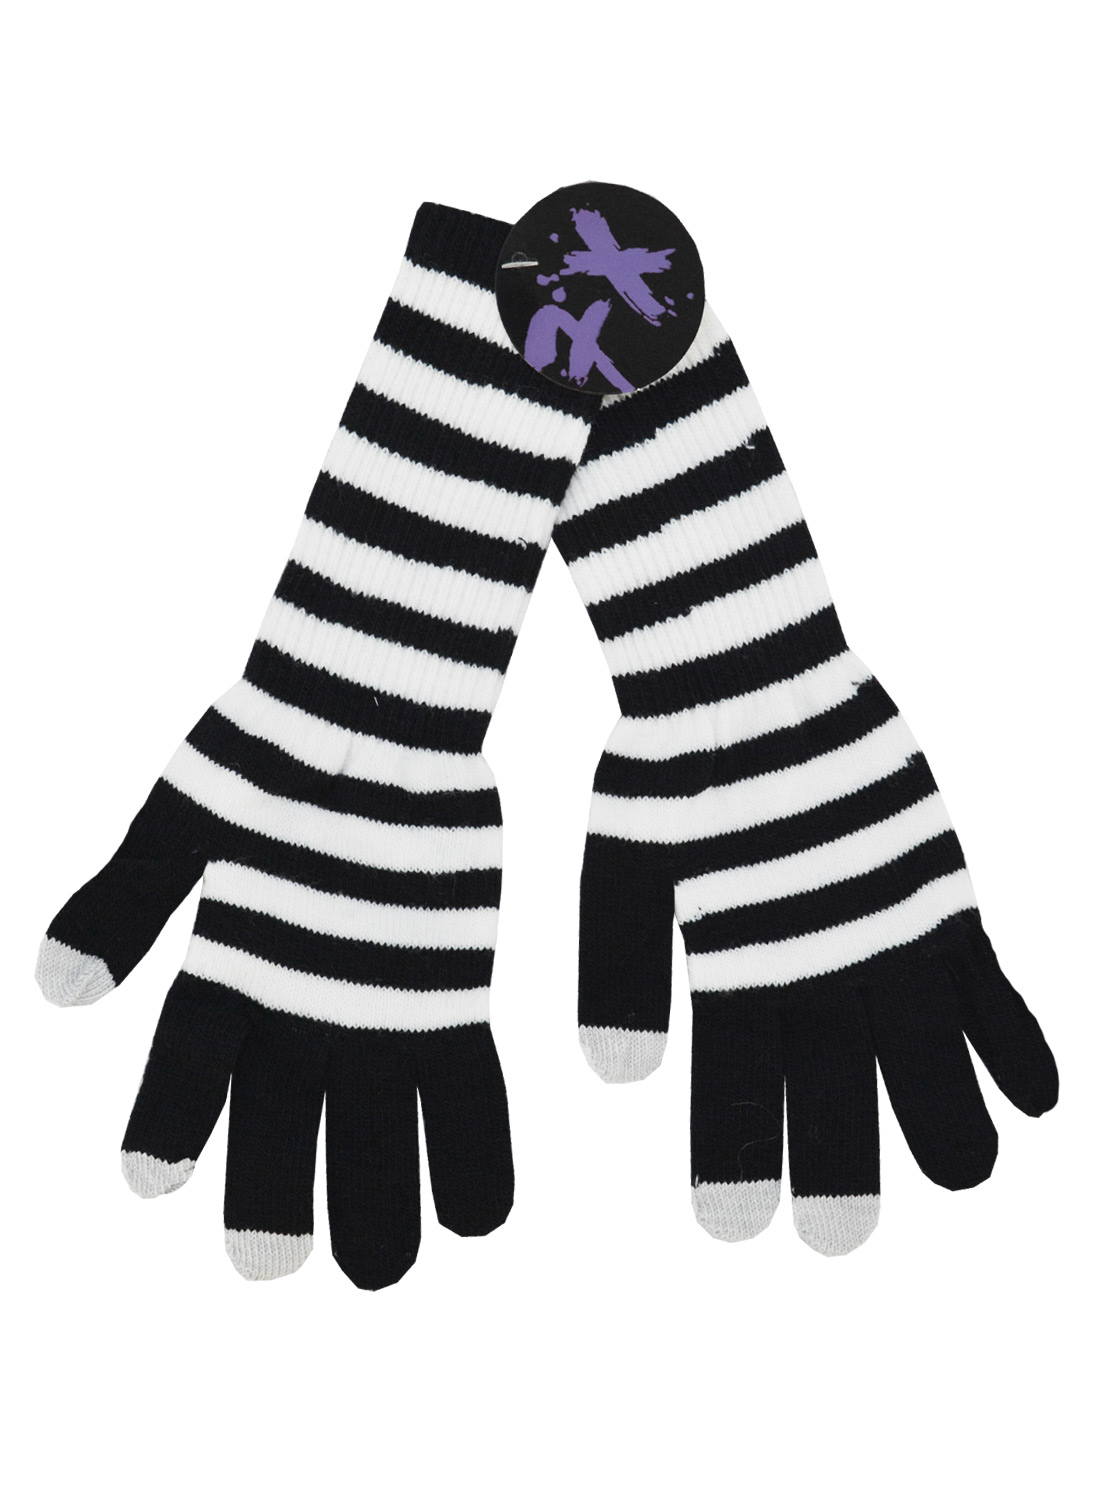 Double Long Black & White Gloves